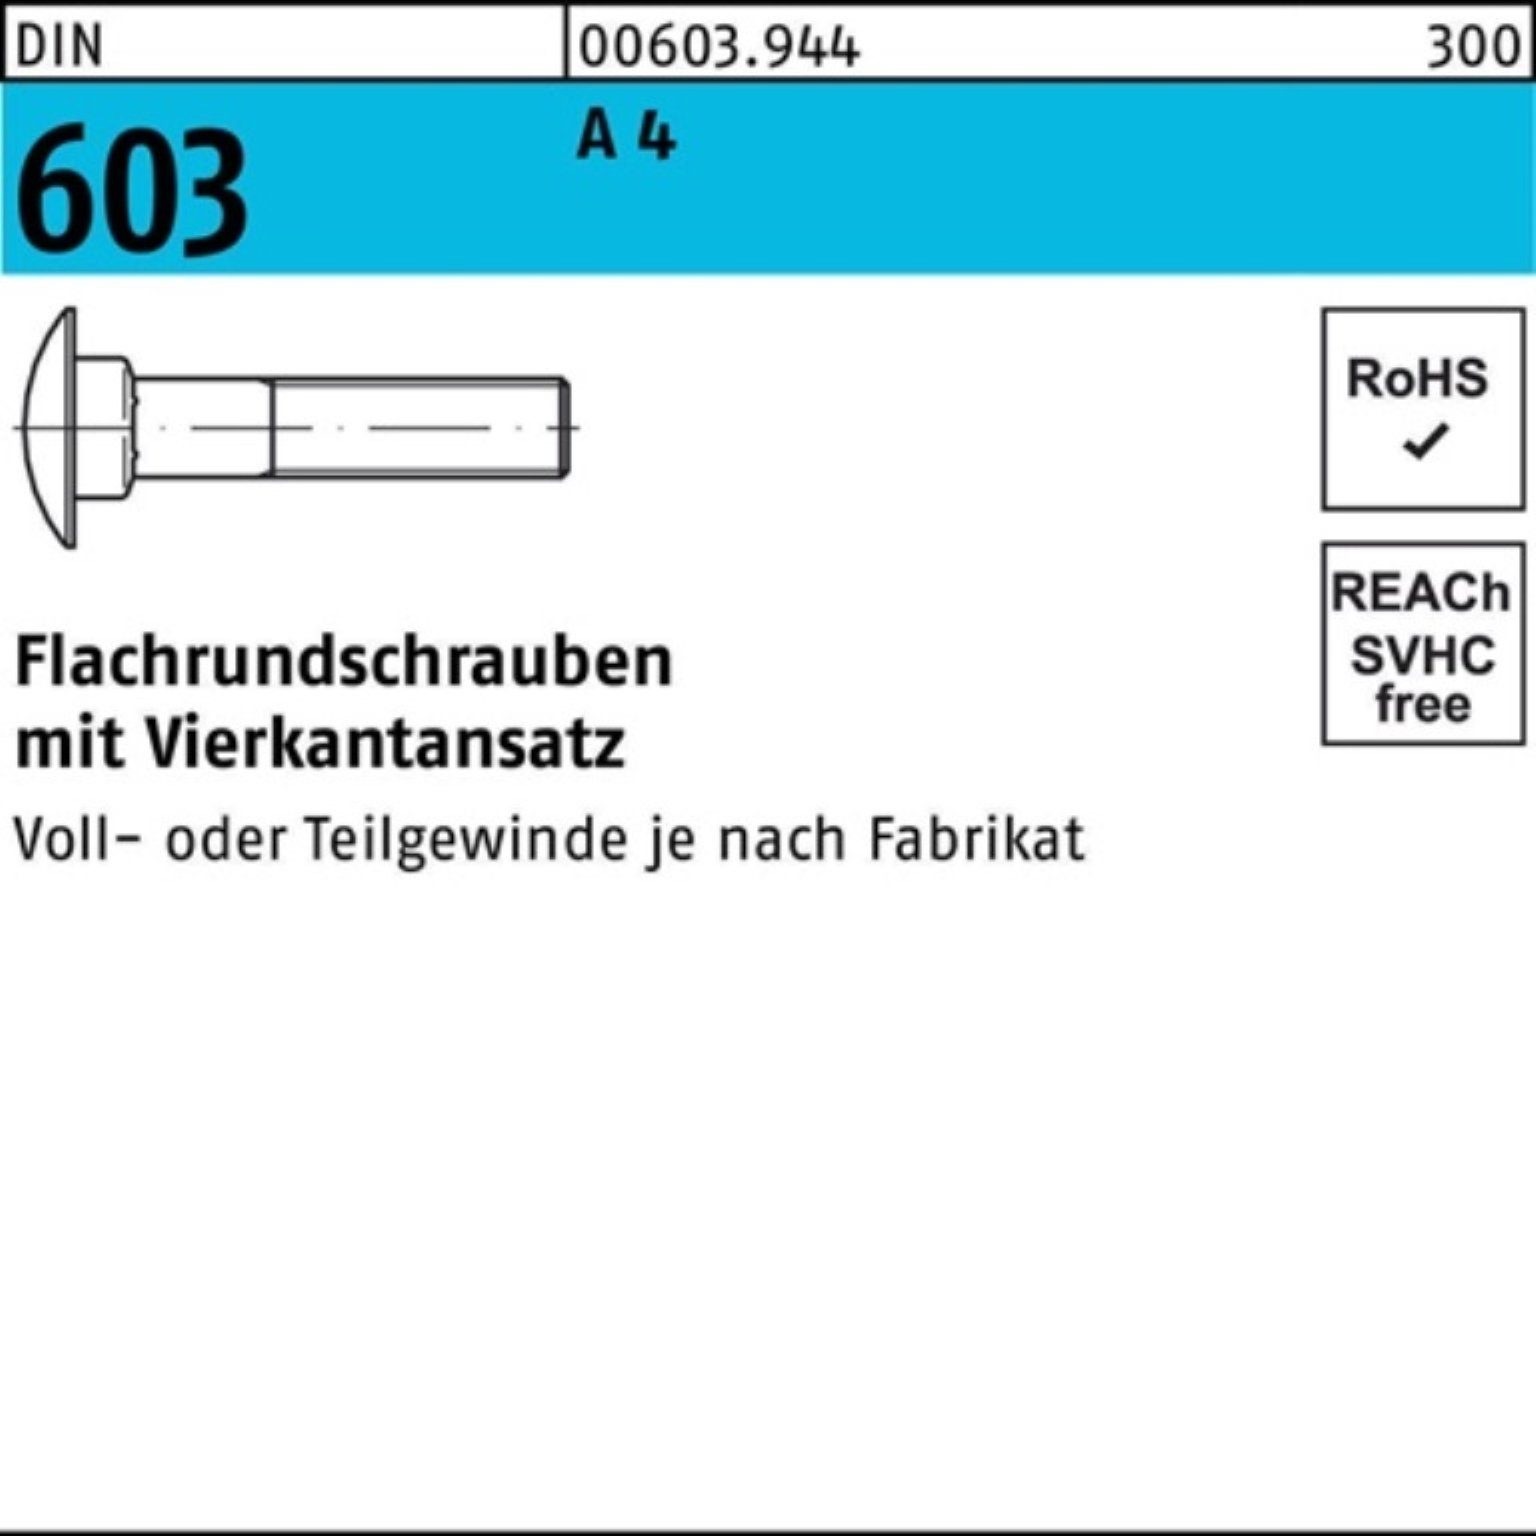 Pack 70 Schraube M8x 603 Flachrundschraube DIN 10 Vierkantansatz Stü Reyher A 4 100er